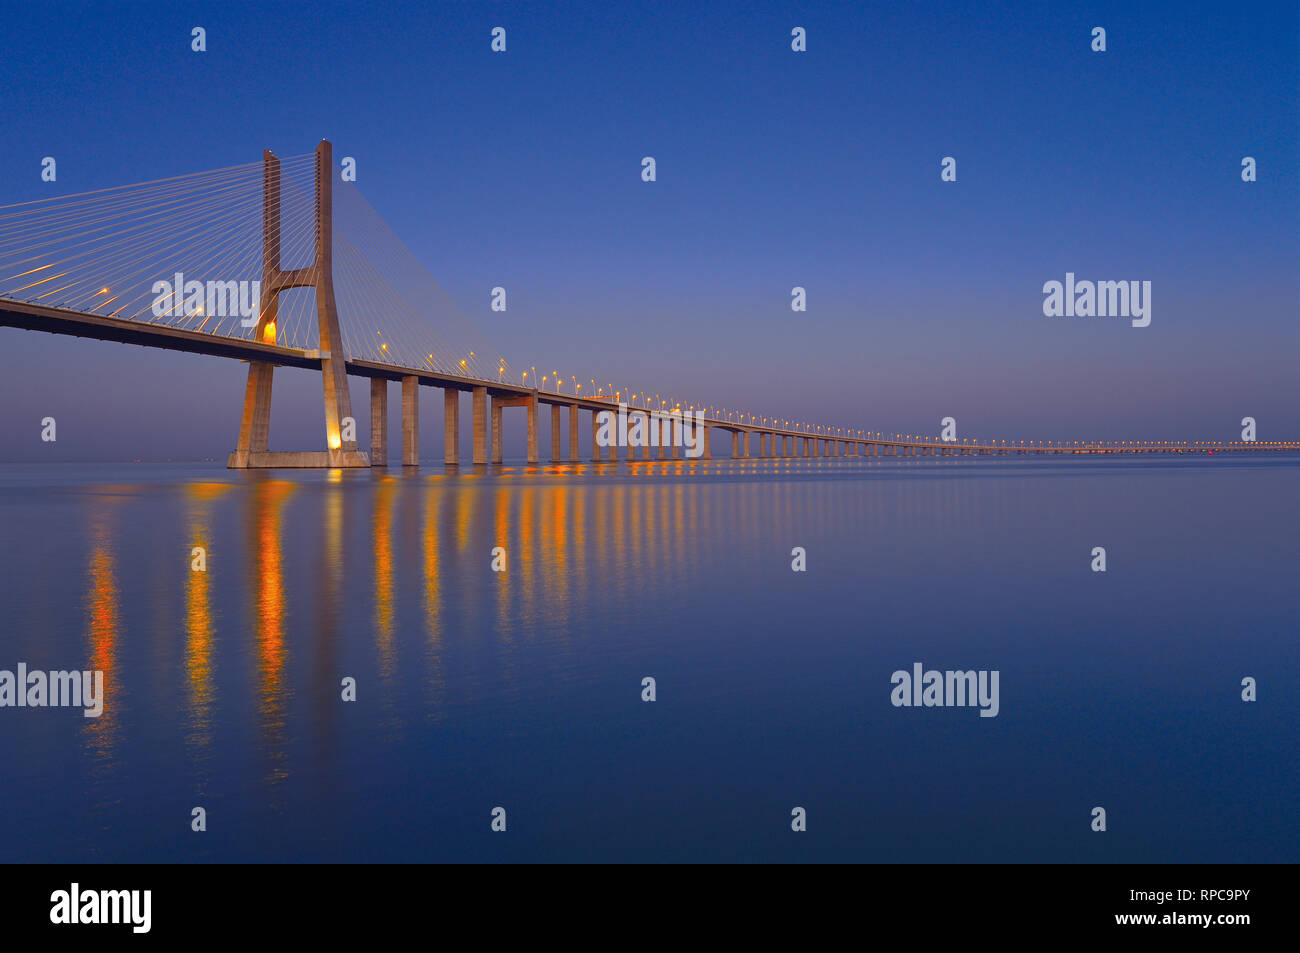 Elegant steel bridge at night passing kilometers over large calm river water Stock Photo